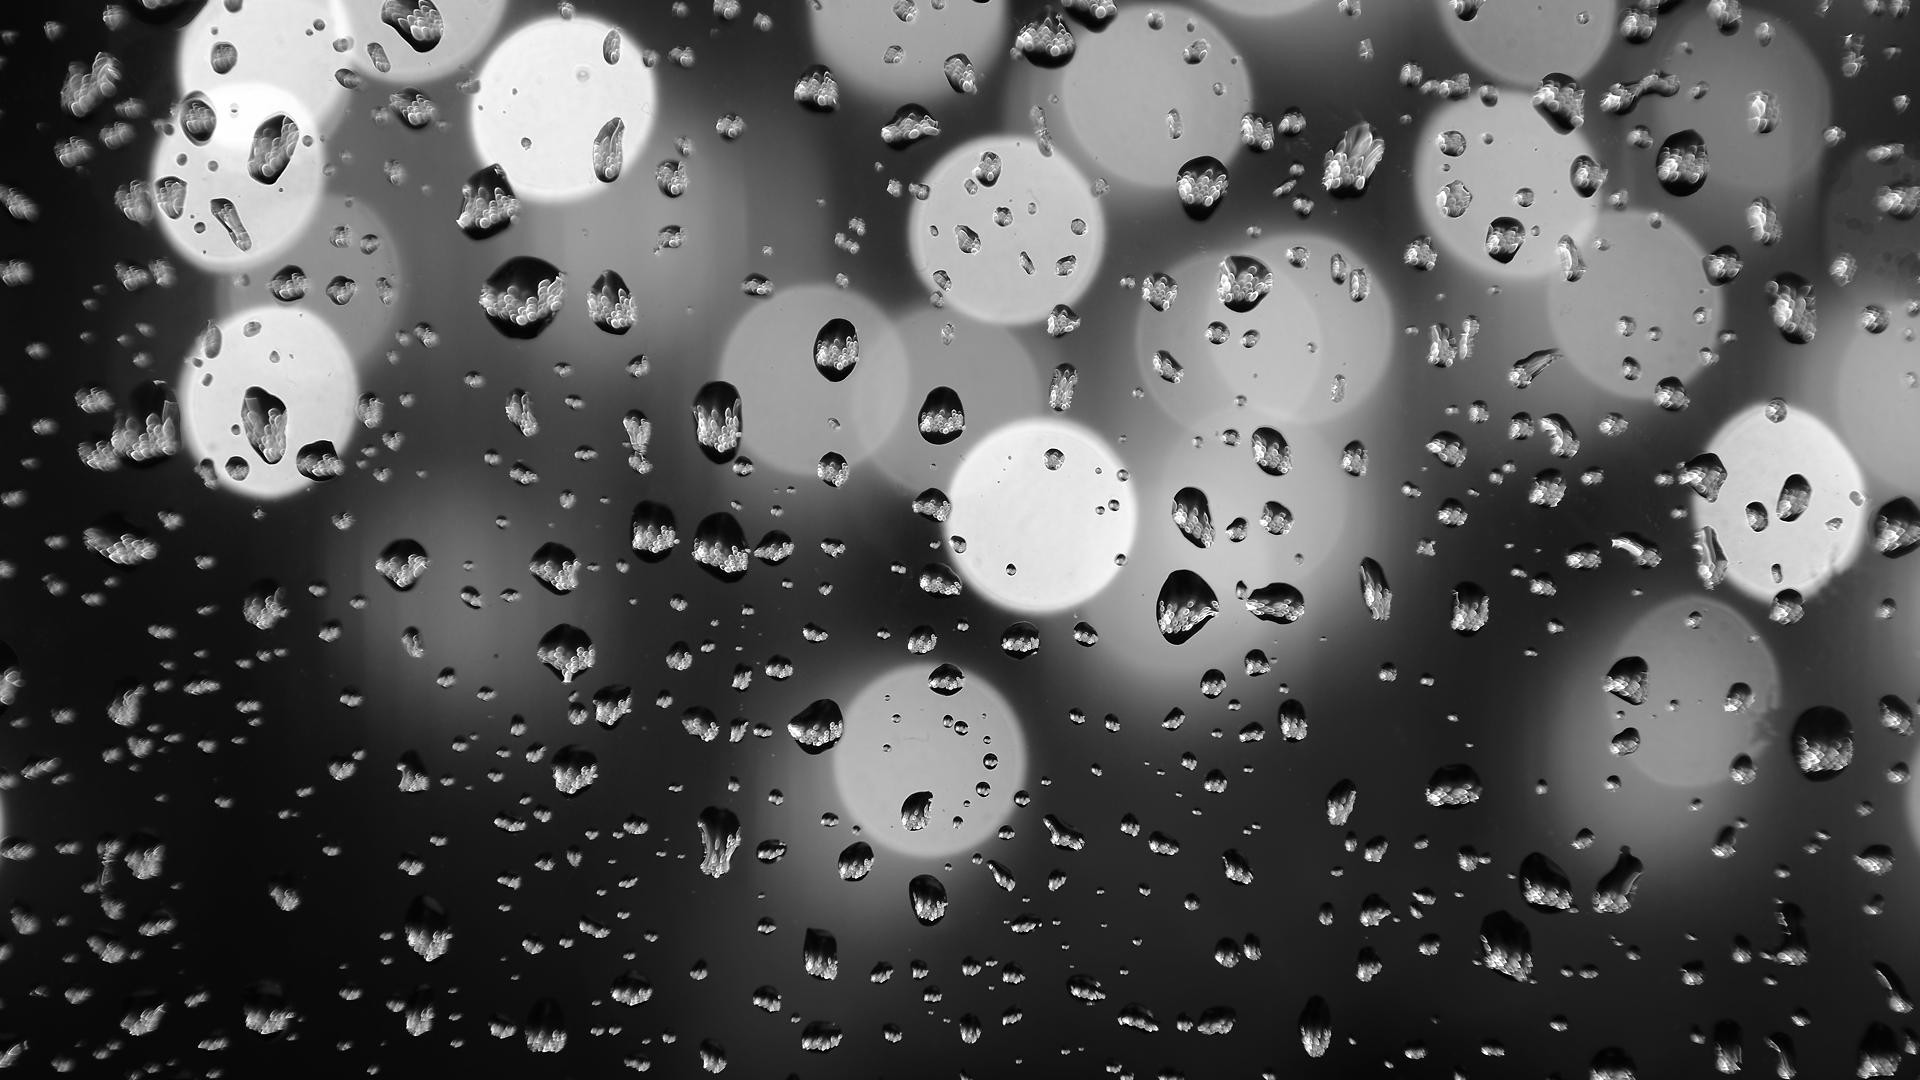 暗い雨の壁紙,水,落とす,雨,霧雨,モノクロ写真